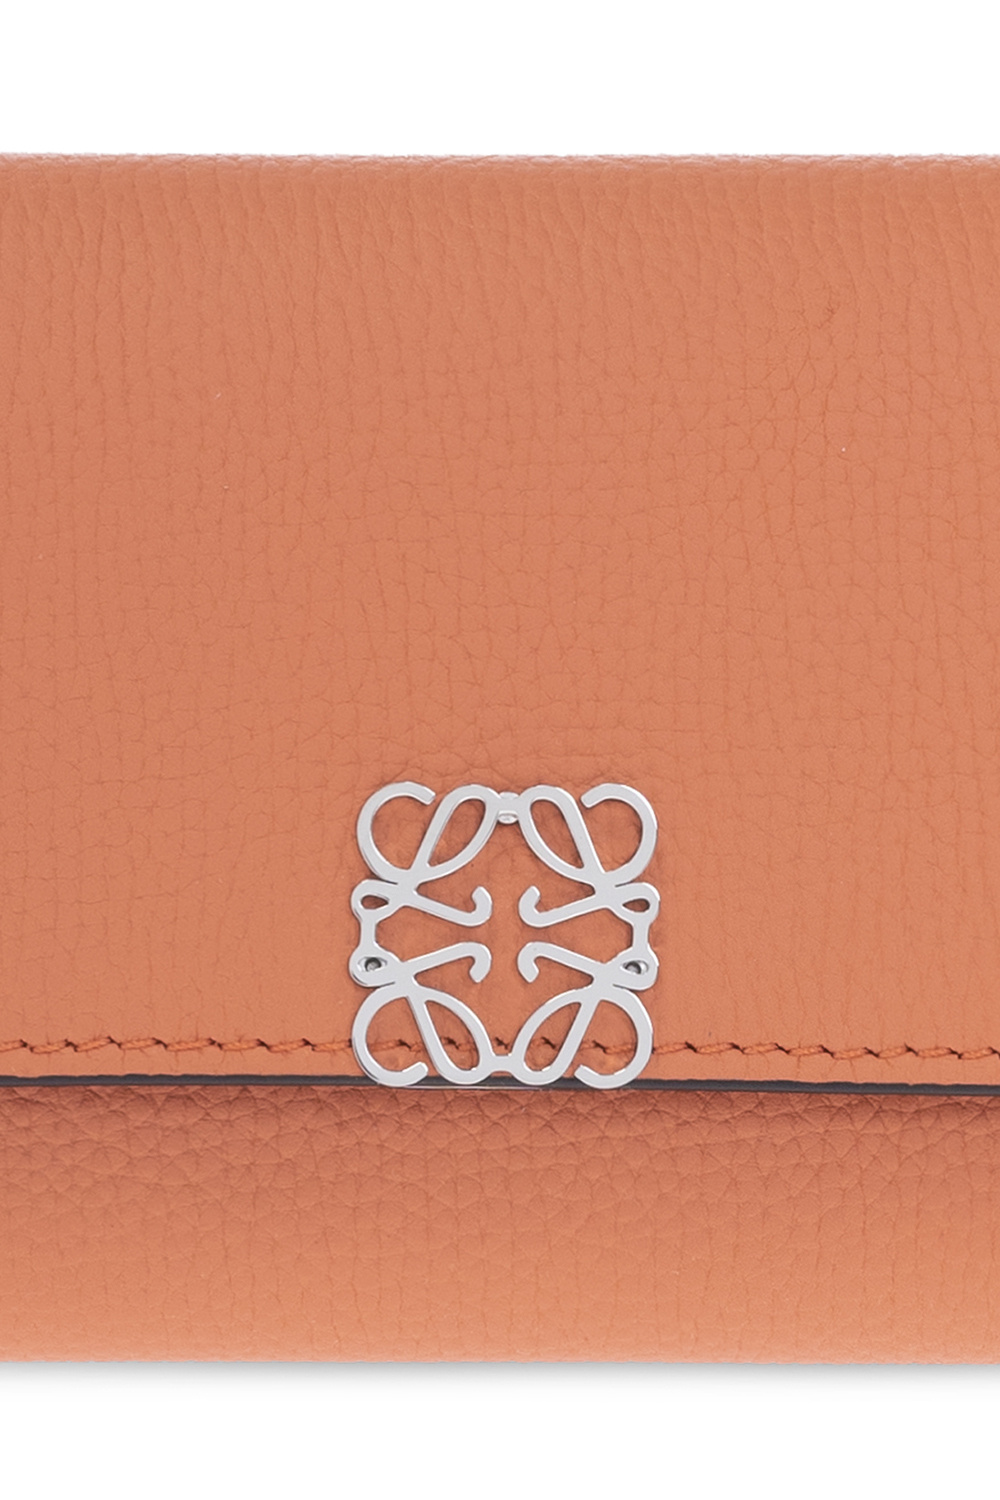 Loewe keyring with leather strap loewe accessories orange tan